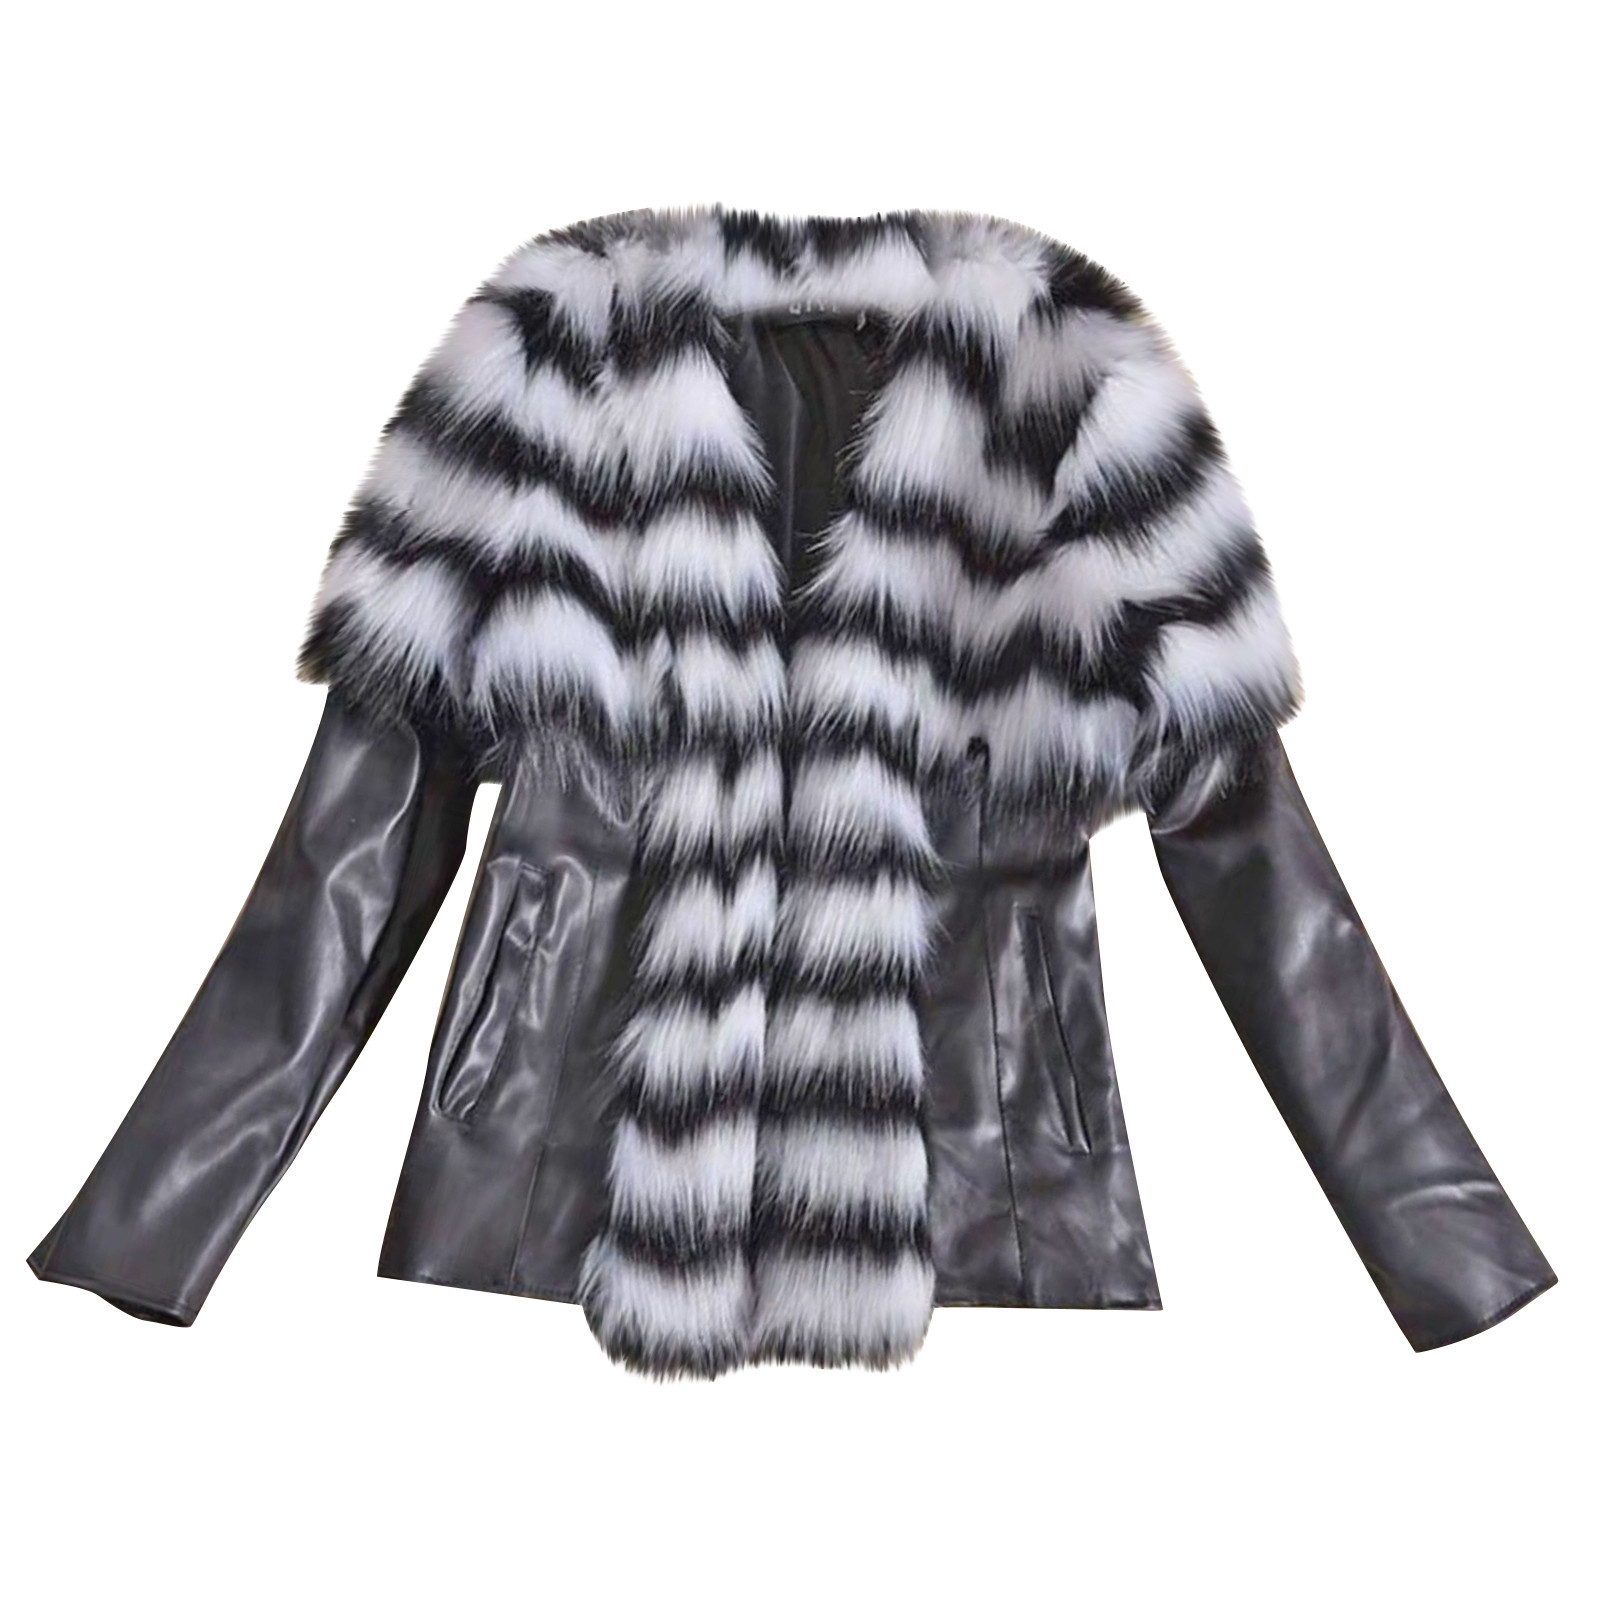 symoid Womens Coats & Jackets- Trendy Leather Zipper Jacket Slim Biker Motorcycle Coat Punk Outwear Gray M - image 2 of 4